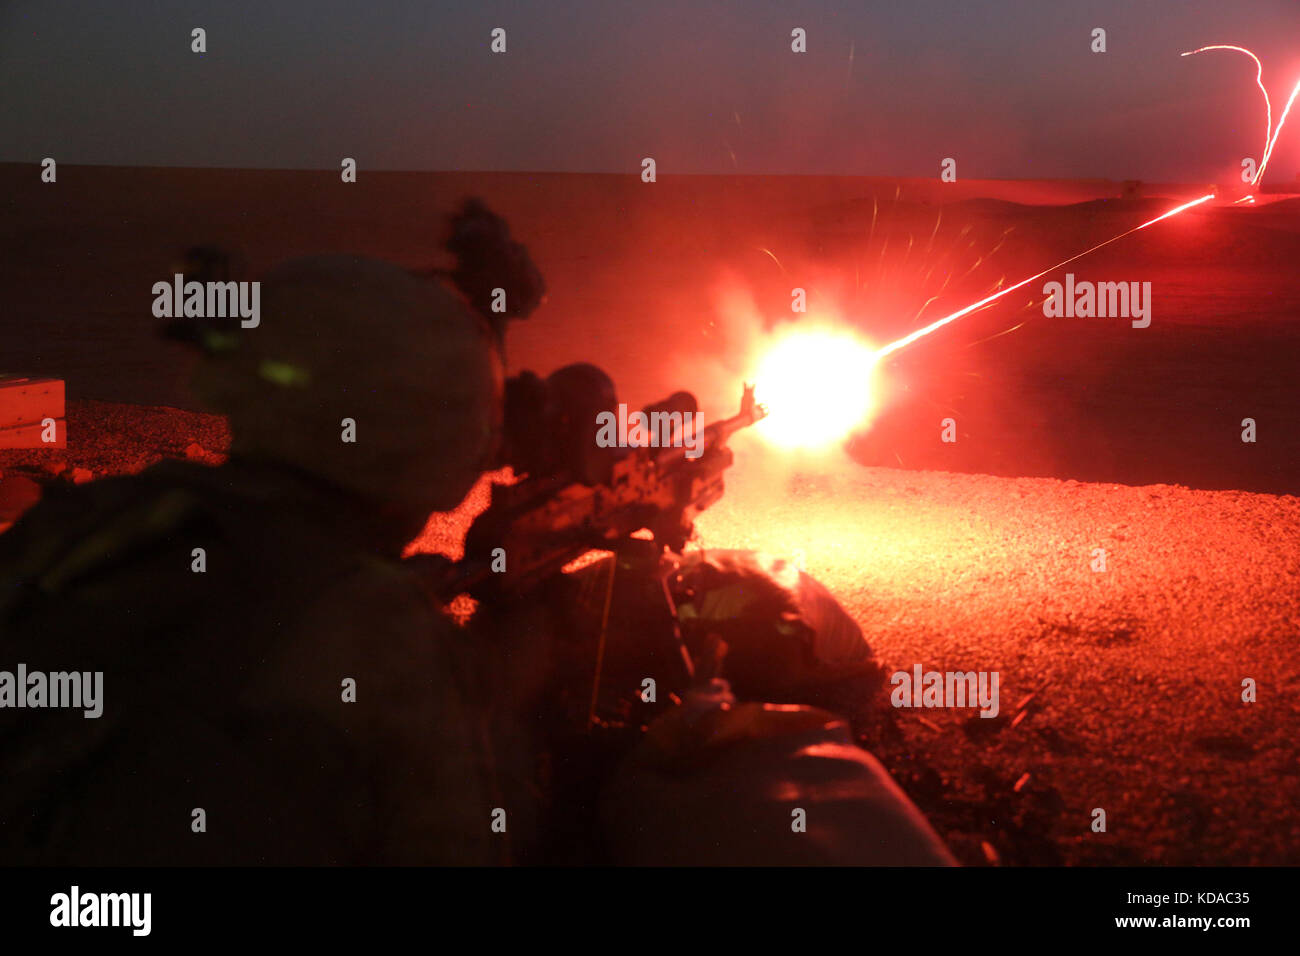 Un US Marine Corps soldato incendi di un tracciante round da un m240l macchina pistola durante un live-fire notte esercitazione a camp shorabak giugno 25, 2017 vicino a lashkar gah, provincia di Helmand, Afghanistan. Foto Stock